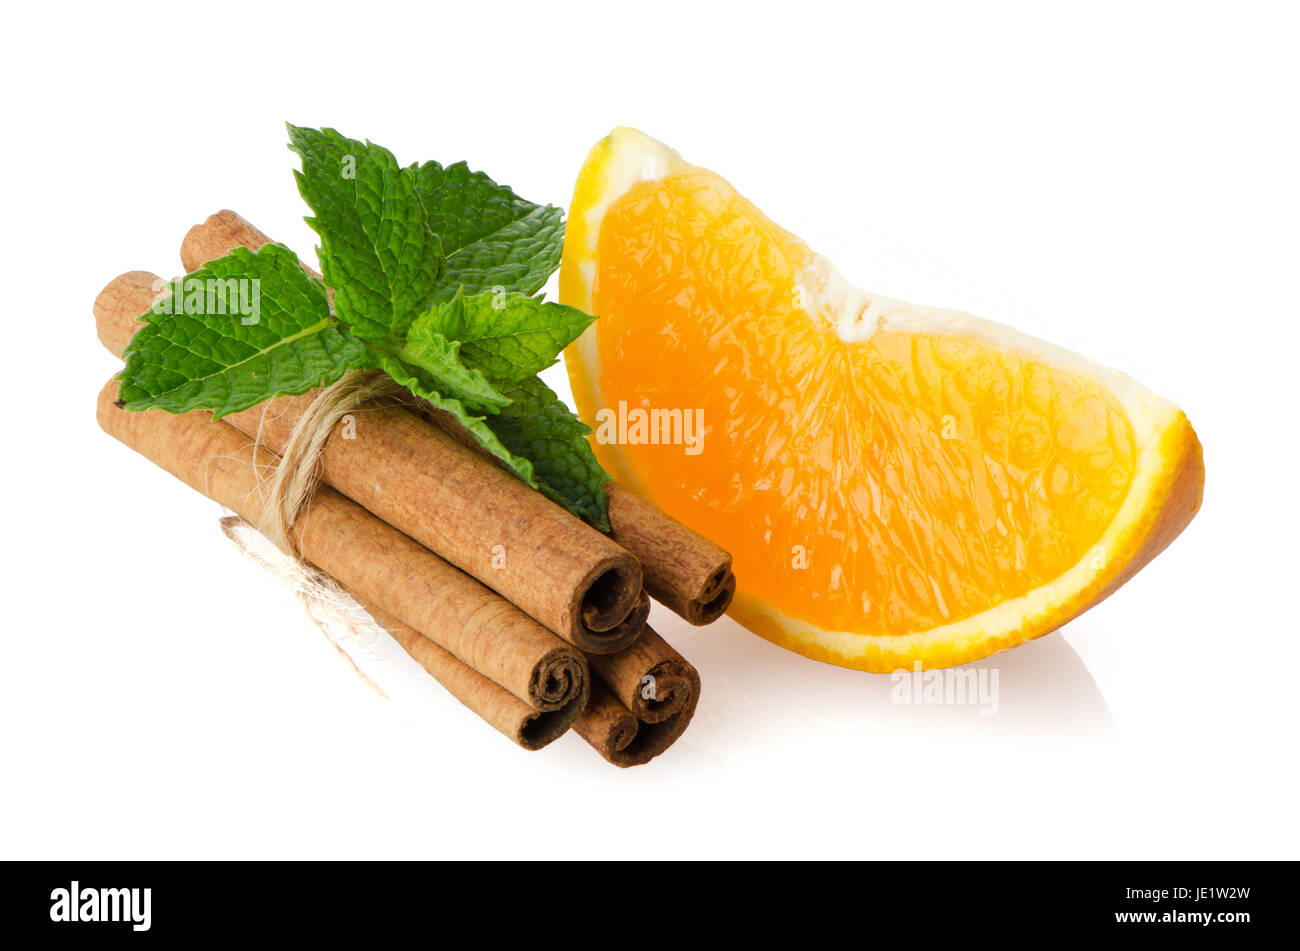 One orange fruit segment or cantle isolated on white background. Stock Photo